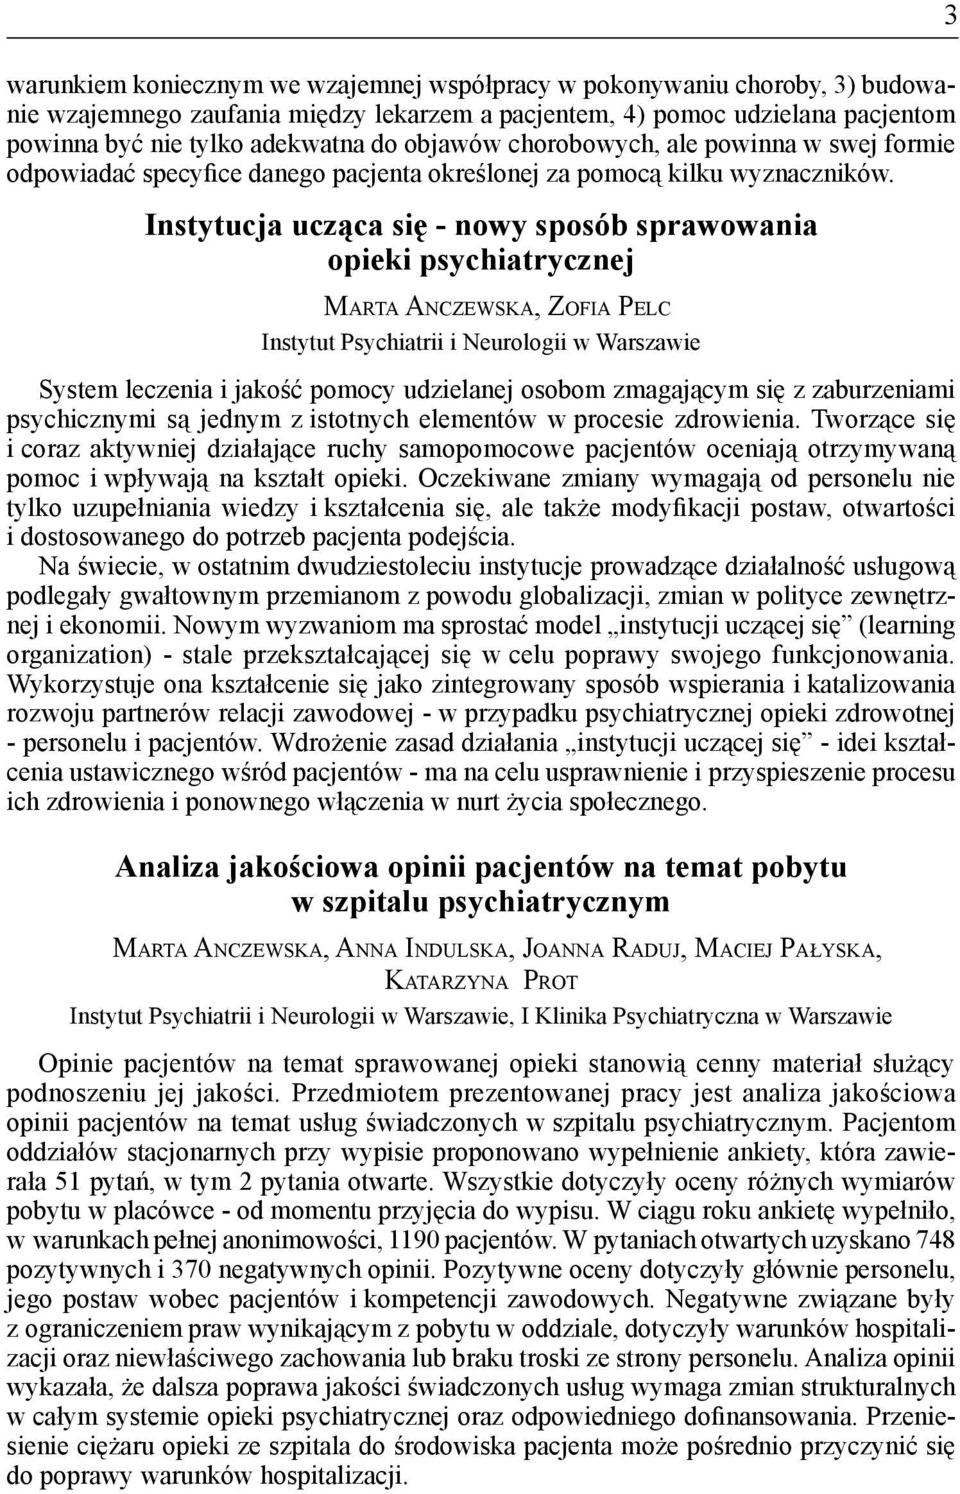 Instytucja ucząca się - nowy sposób sprawowania opieki psychiatrycznej Marta Anczewska, Zofia Pelc Instytut Psychiatrii i Neurologii w Warszawie System leczenia i jakość pomocy udzielanej osobom